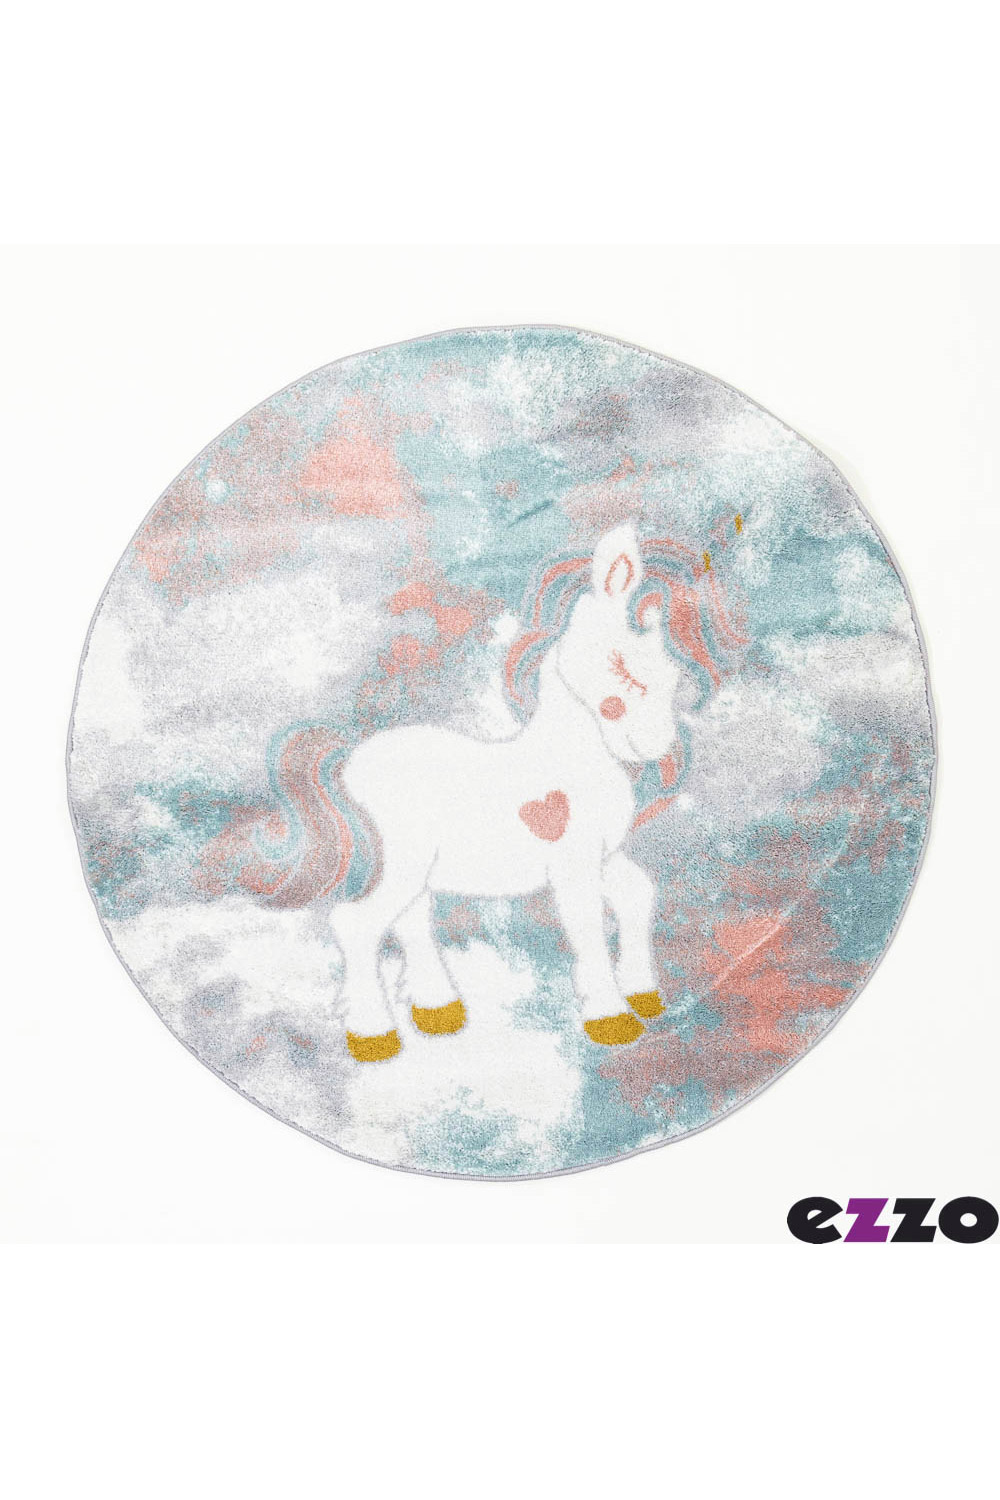 ezzo-Kiddie-Unicorn-B805AX6--Round